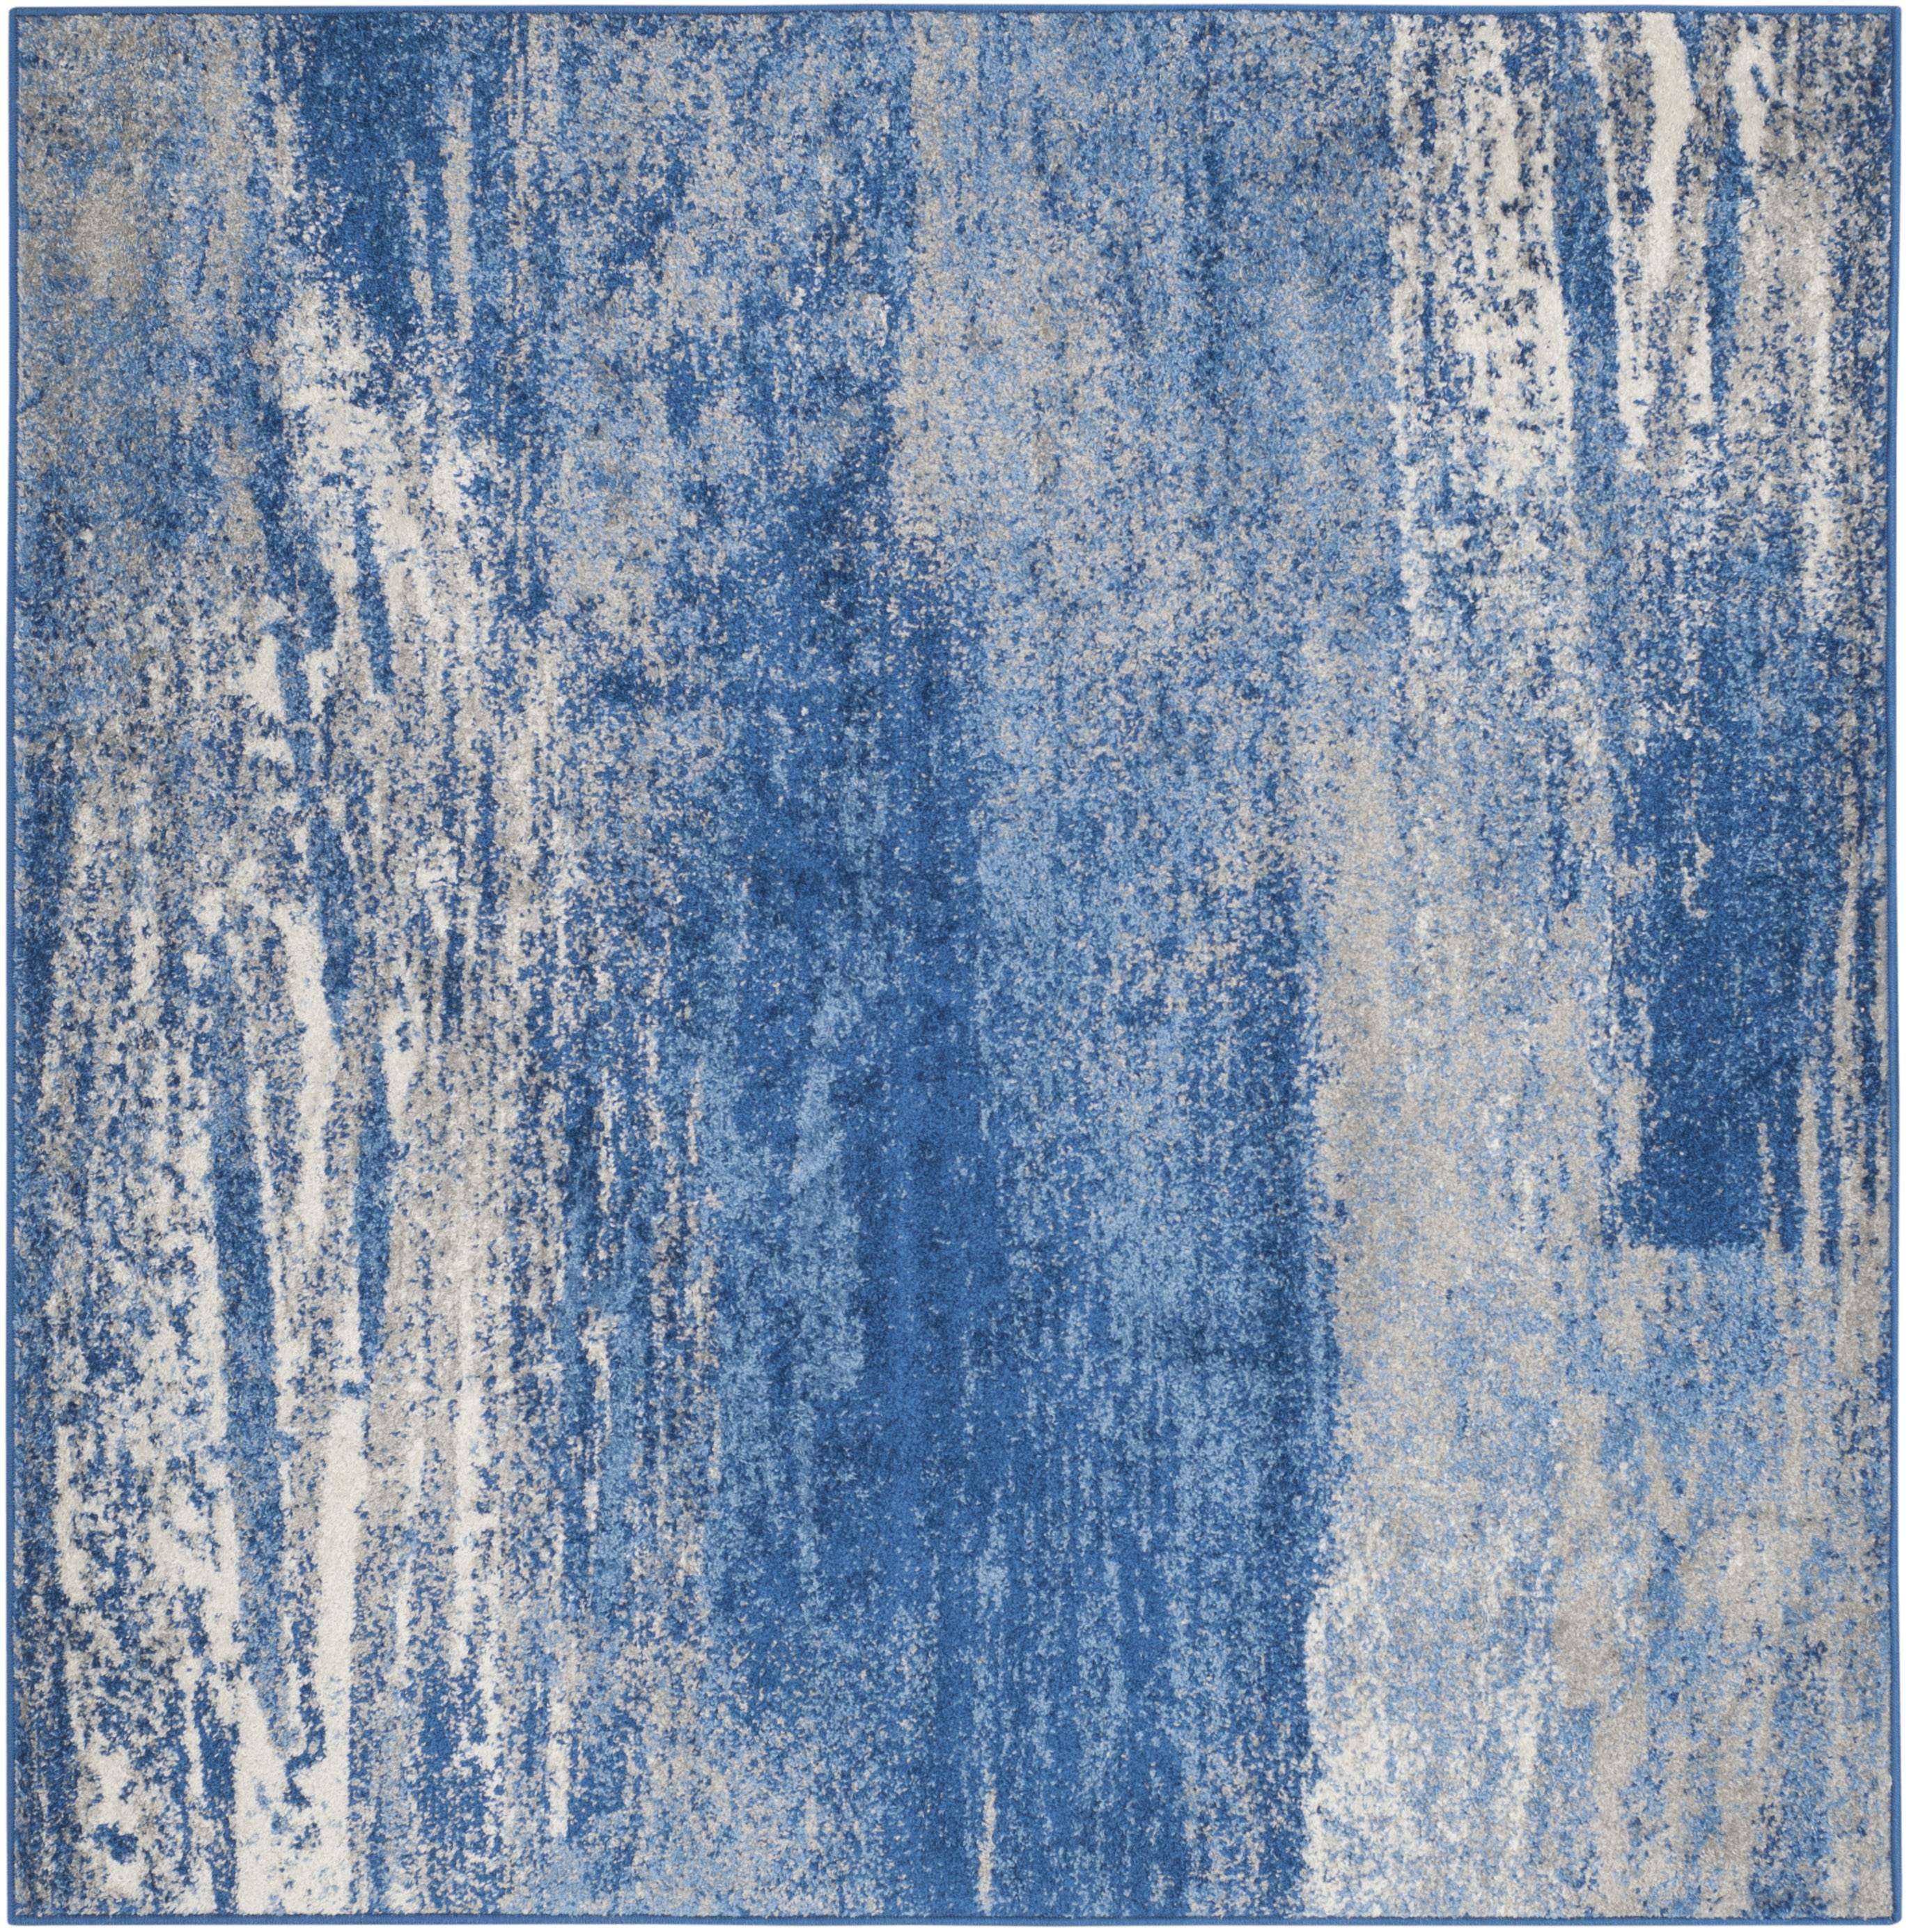 Arlo Home Woven Area Rug, ADR112F, Silver/Blue,  6' X 6' Square - Image 0